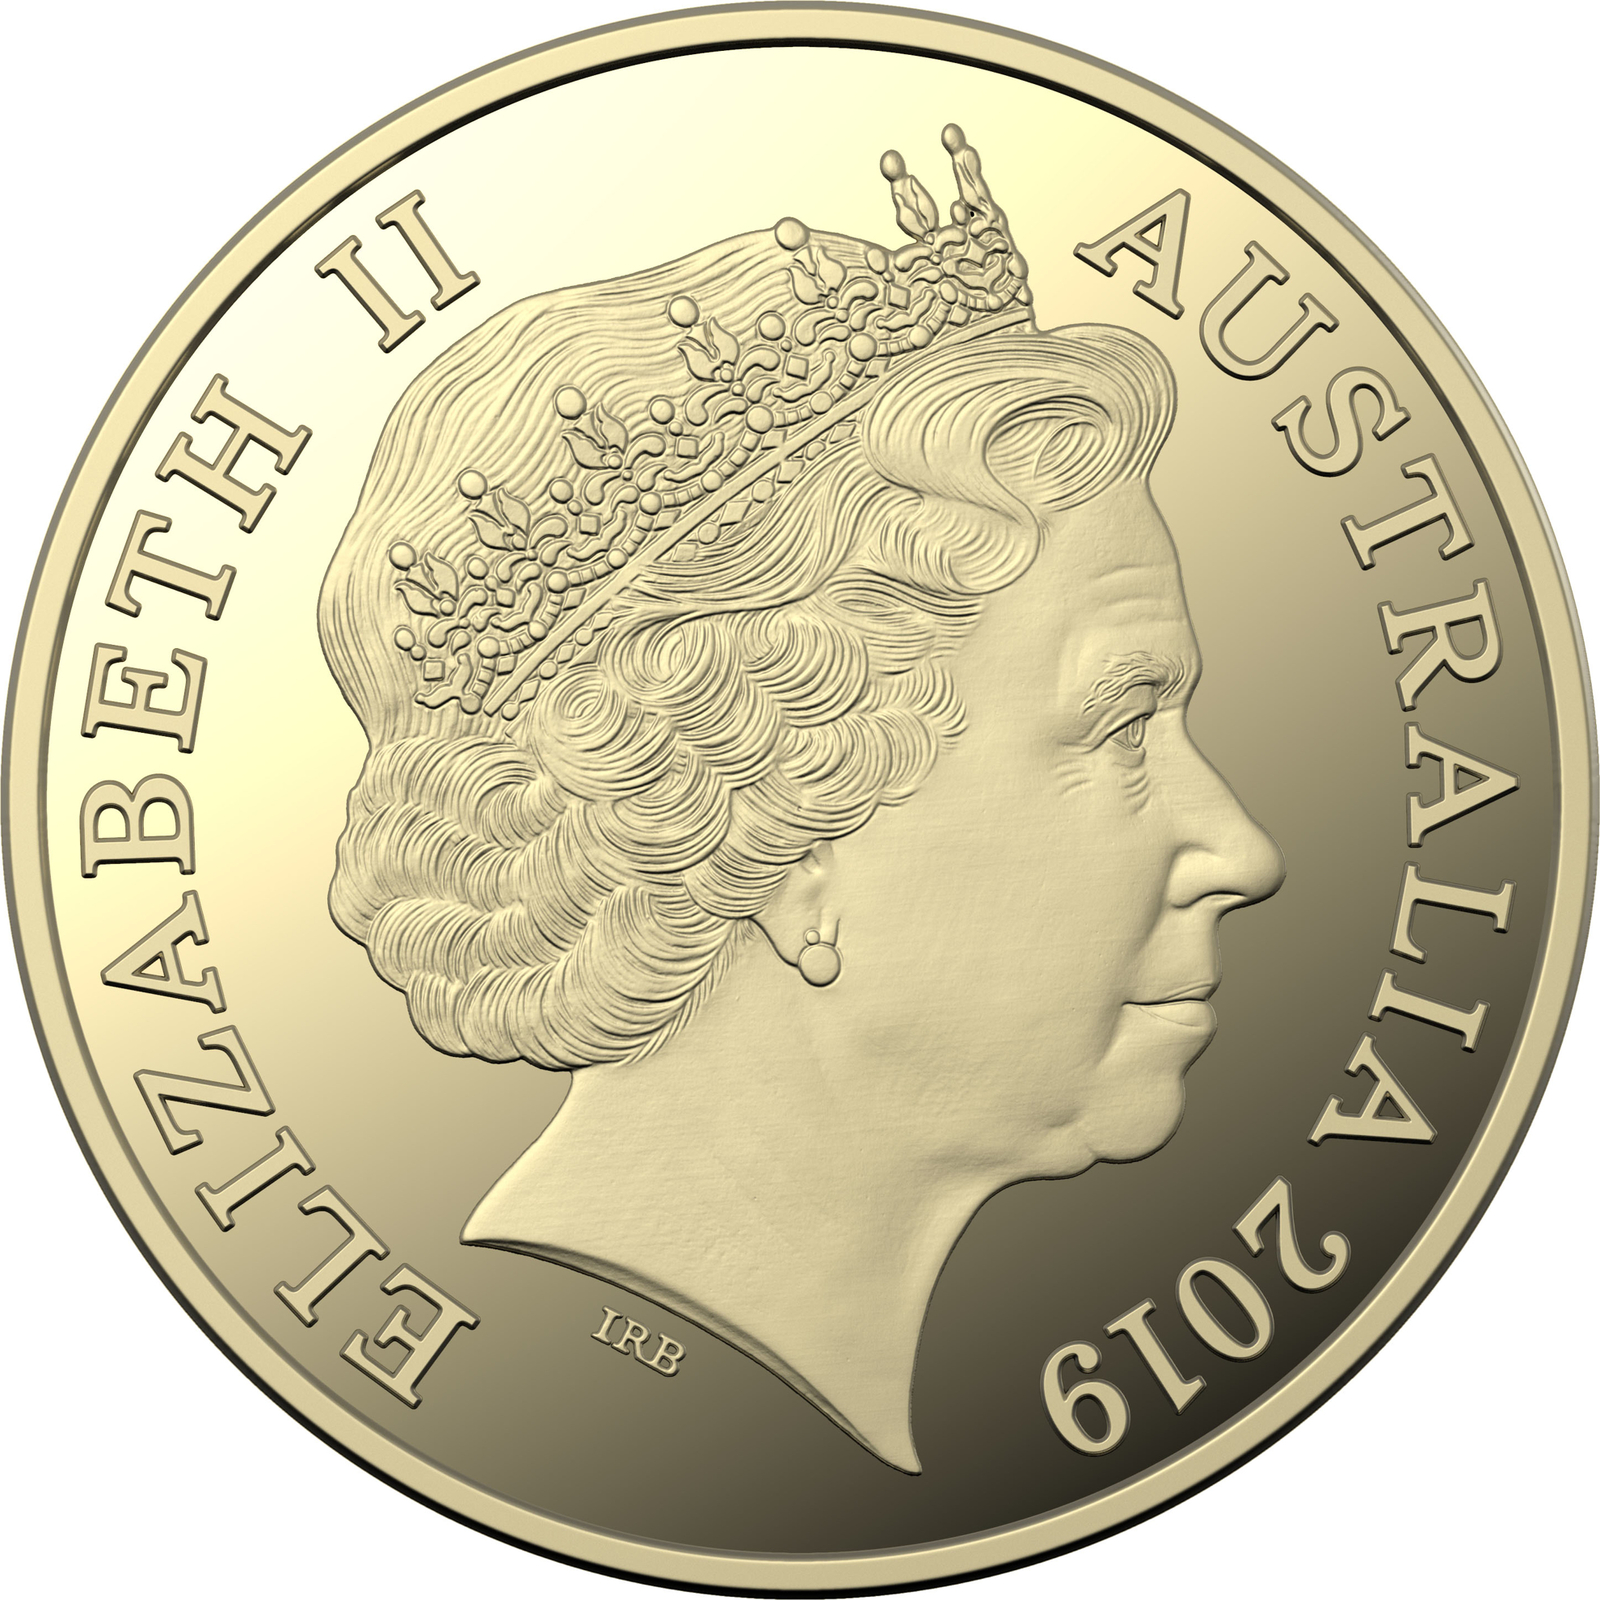 2019 $1 "O" Great Australian Coin Hunt